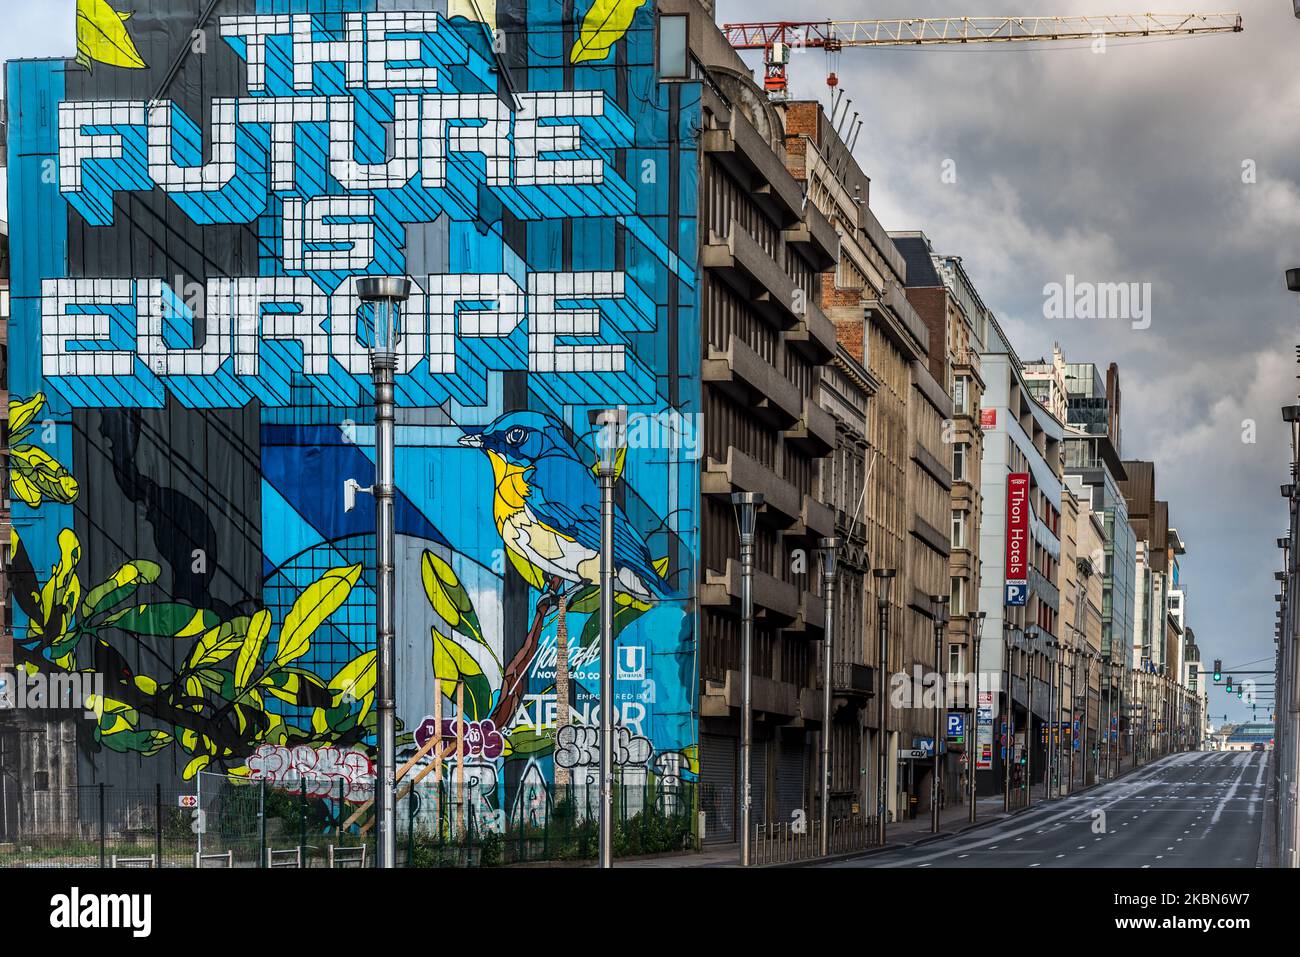 Gesamtansicht der Rue De La Loi (Wetstraat) in Brüssel - Belgien 01 Mai 2020. Aufgrund der Ausbreitung der Coronavirus-Pandemie (COVID-19) sind keine Massenveranstaltungen oder Demonstrationen erlaubt. (Foto von Jonathan Raa/NurPhoto) Stockfoto